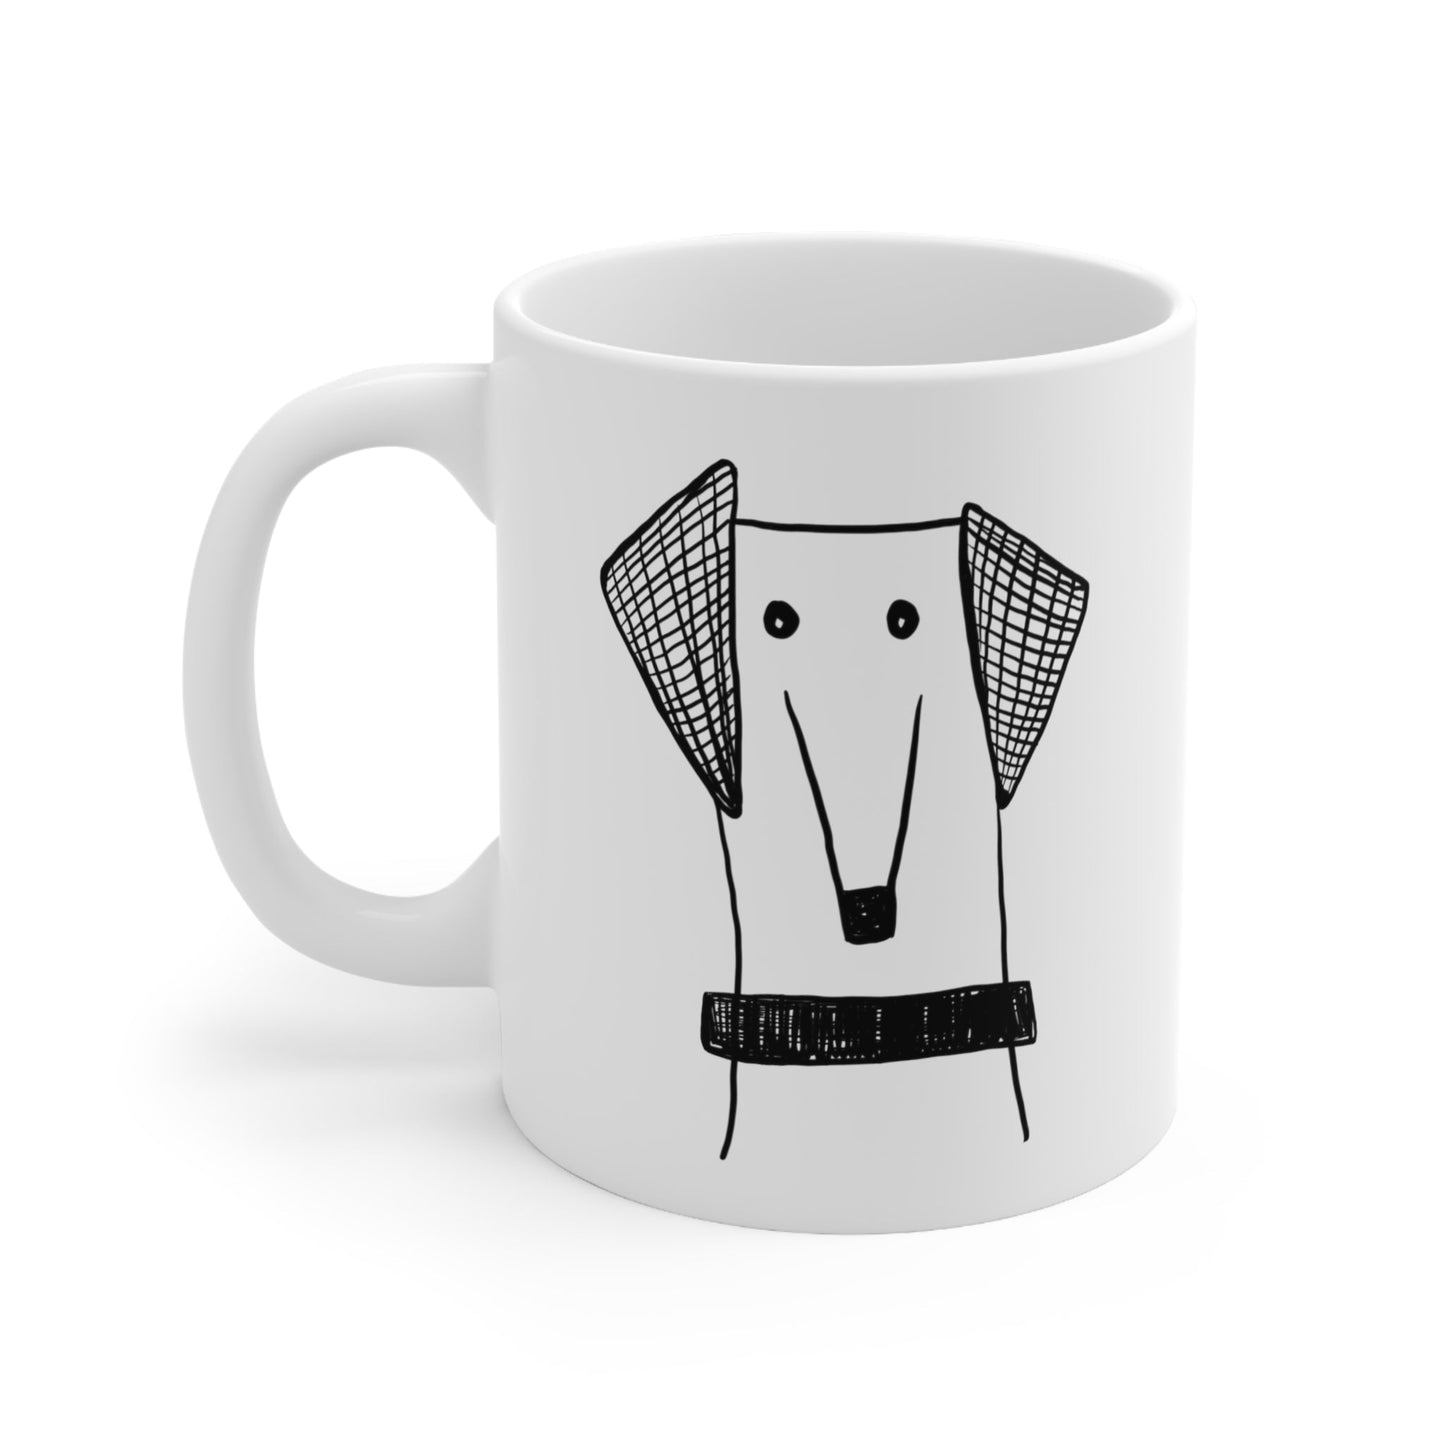 whippet hound mug - The muggin shop